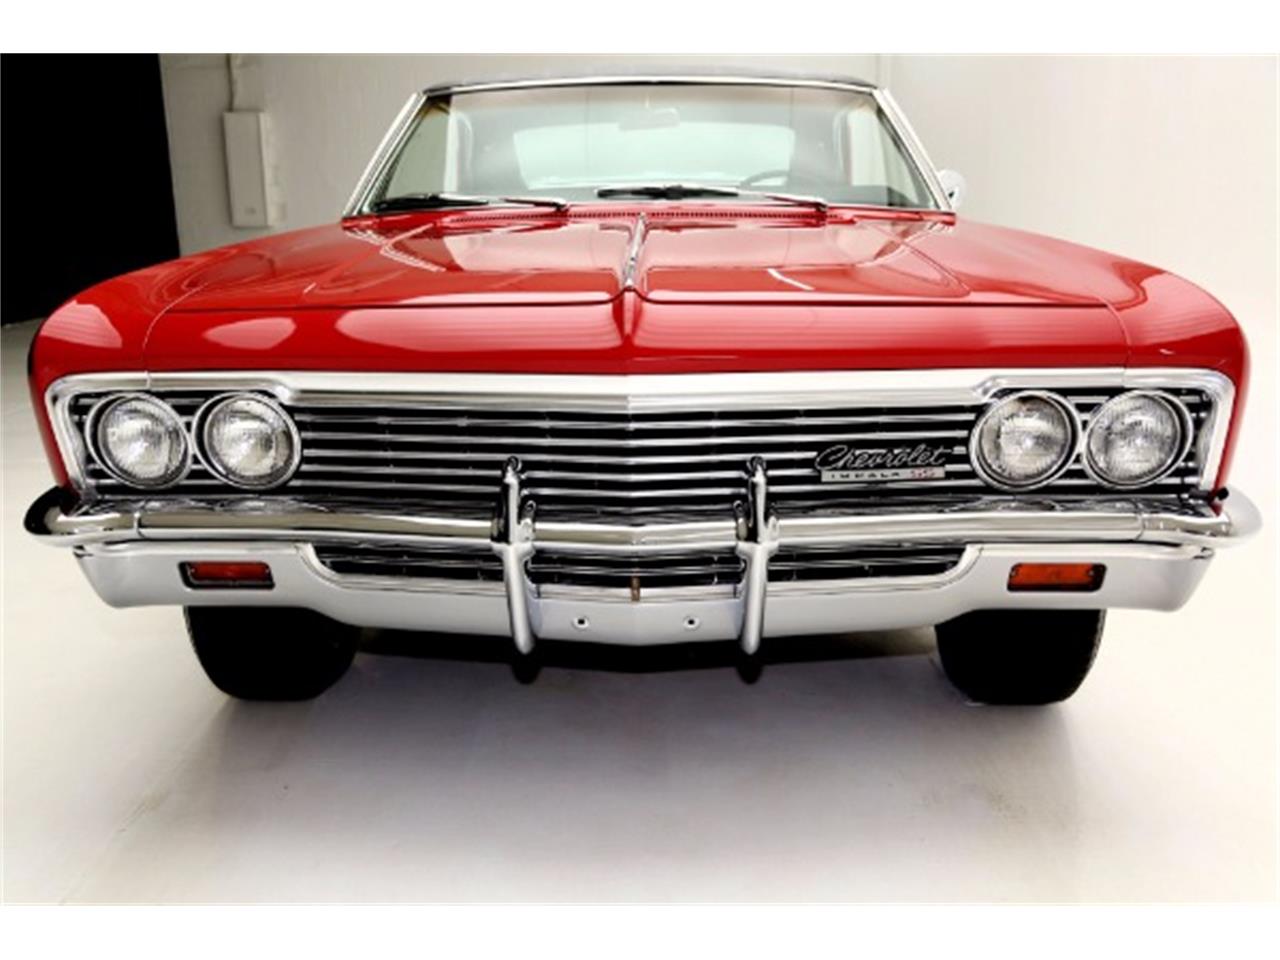 1966 Chevrolet Impala SS for Sale | ClassicCars.com | CC-914822